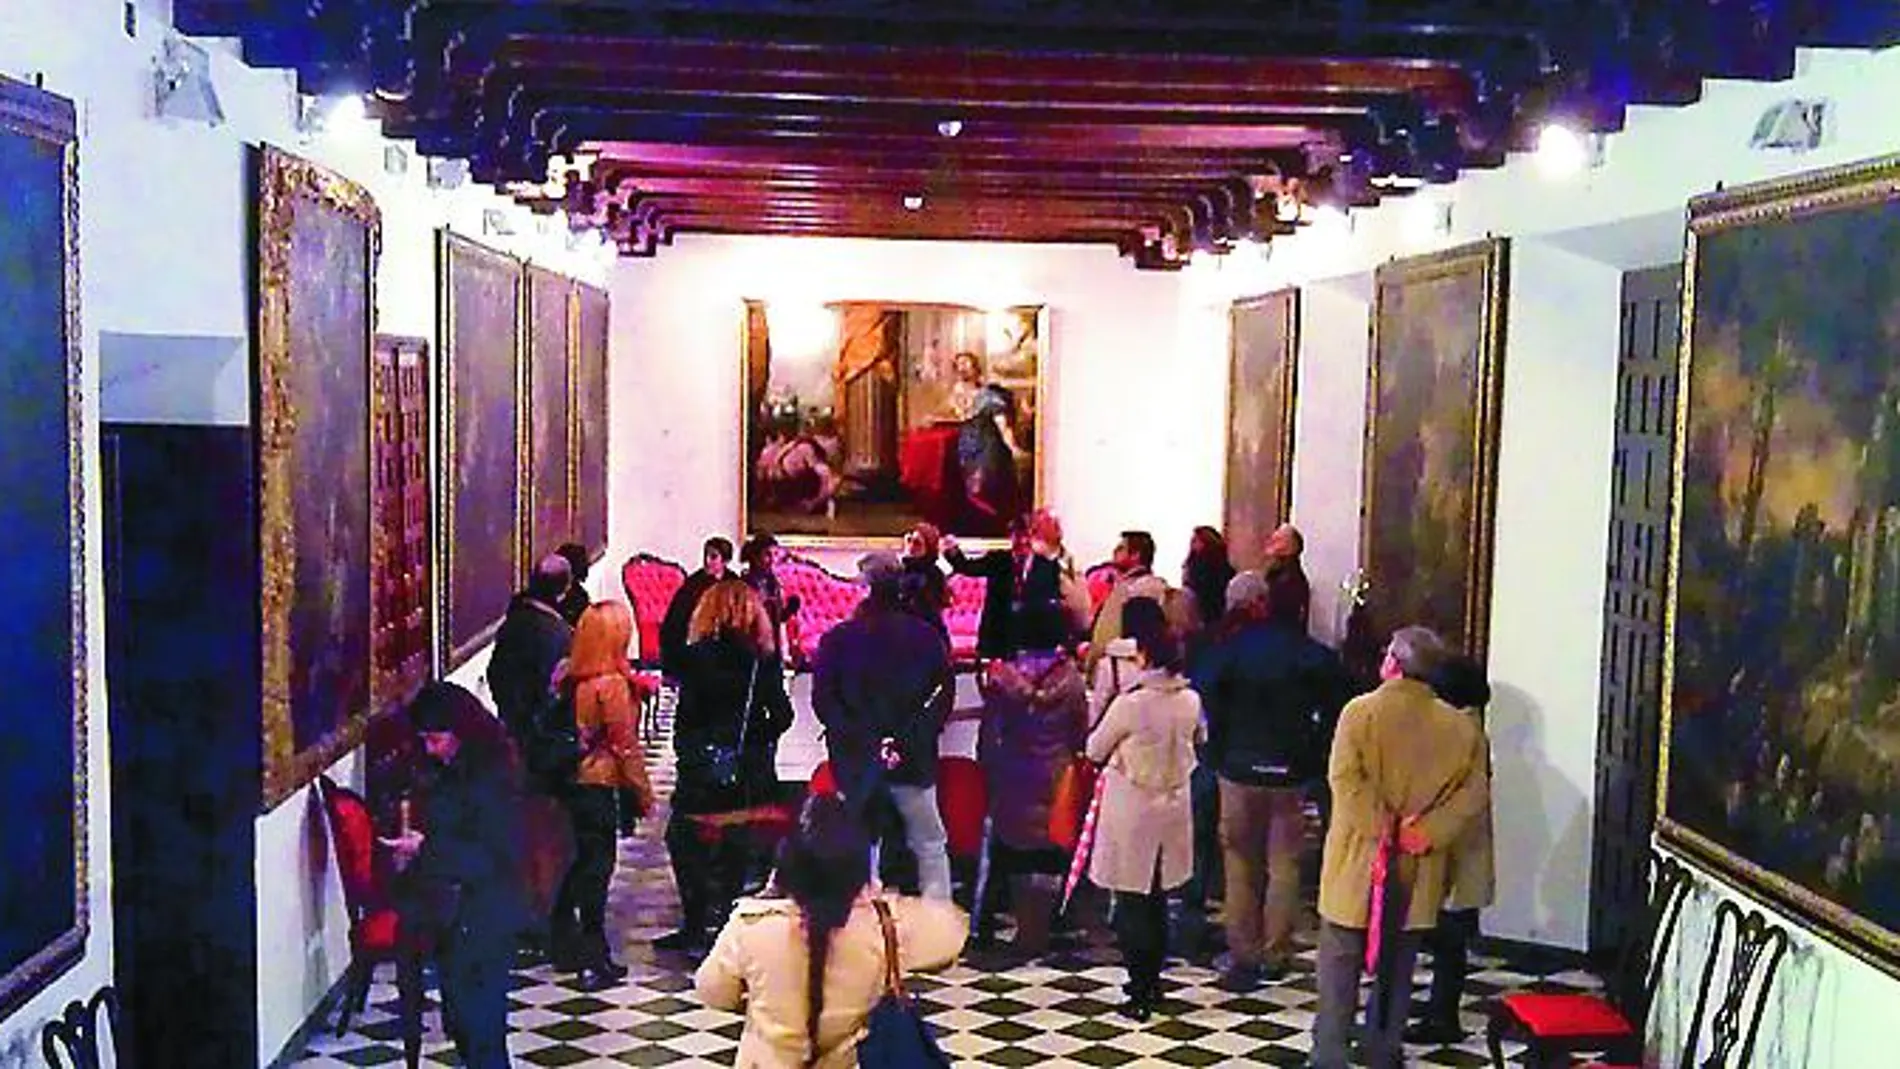 Las visitas recorren la iglesia de San Jorge y varias estancias de la institución, como la biblioteca o la sala capitular